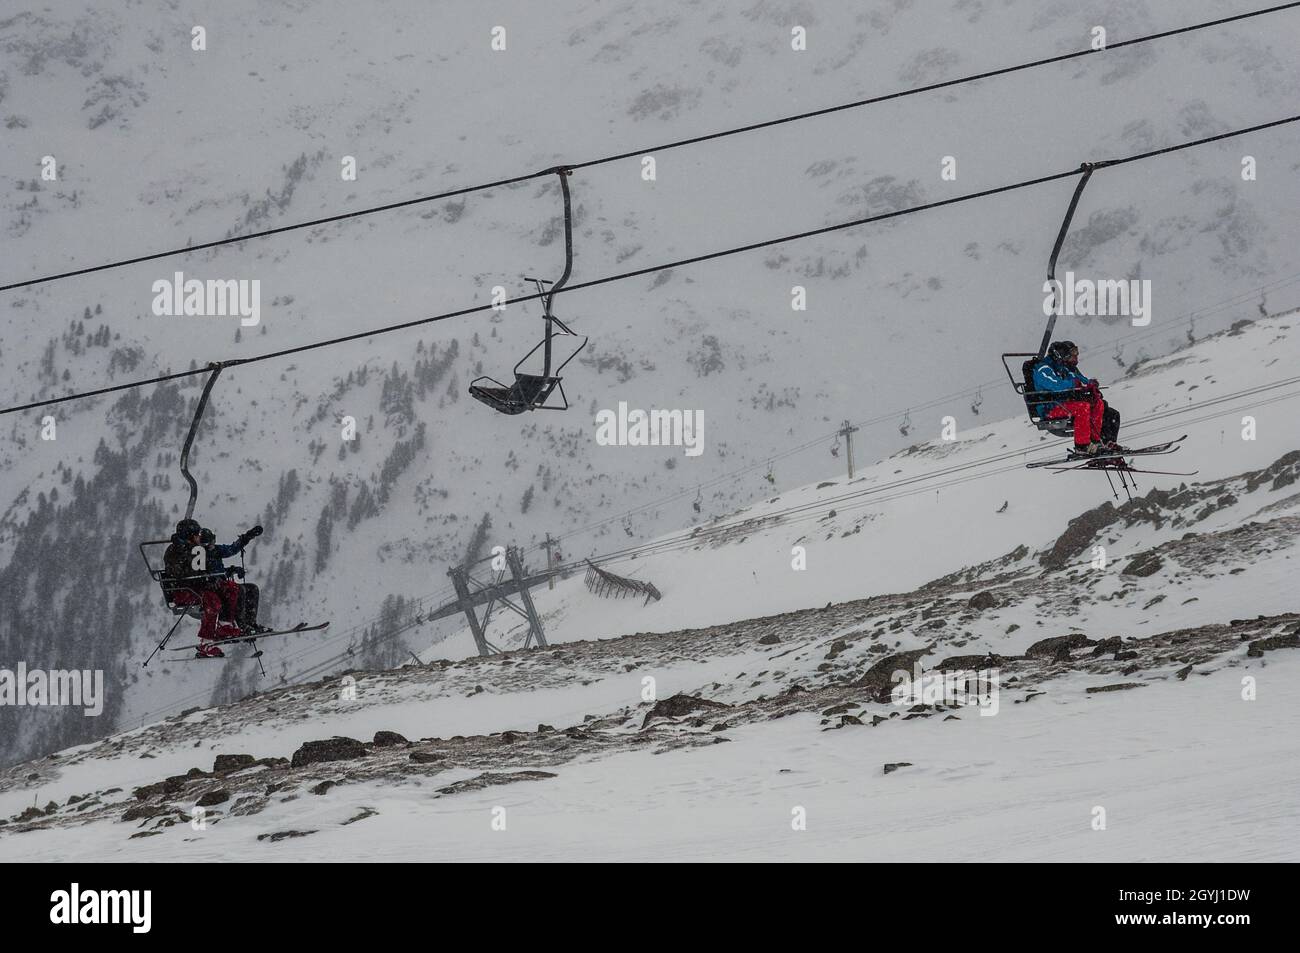 SOELDEN, AUSTRIA - GENNAIO 23 2012: Gli sciatori prendono la seggiovia fino alla montagna. Foto Stock